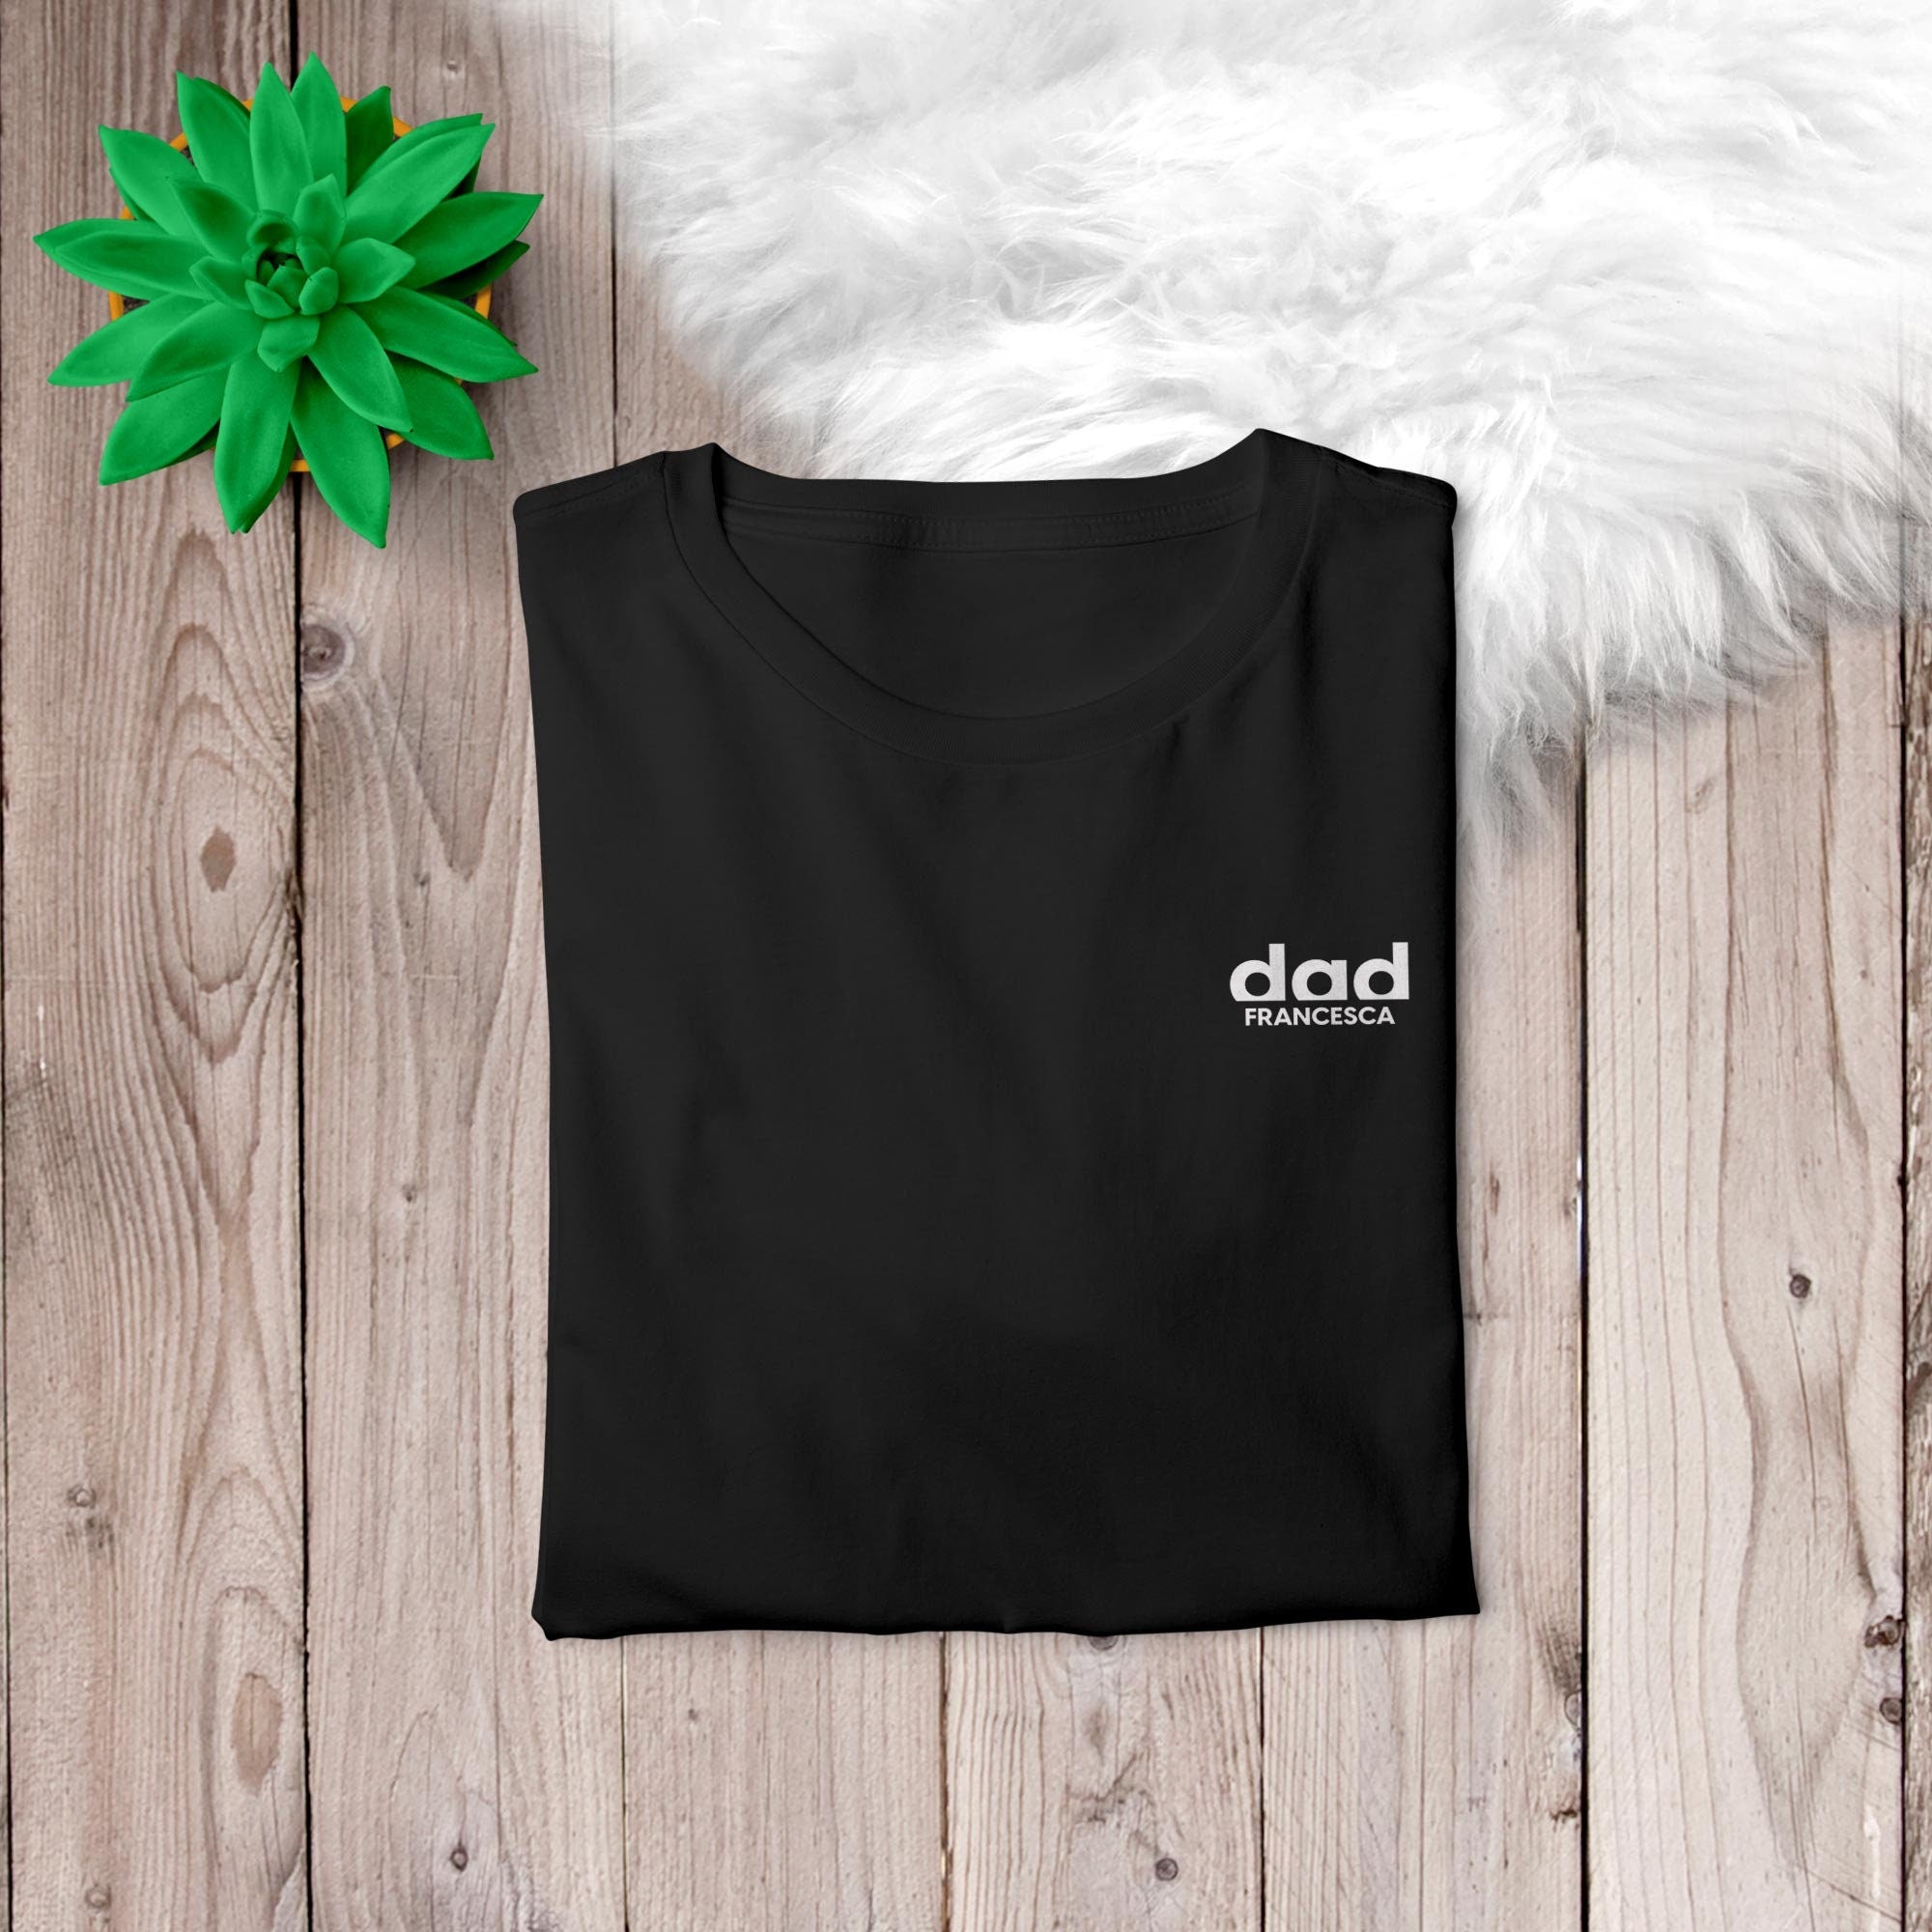 Dad T-Shirt weiß schwarz, personalisiert mit Namen